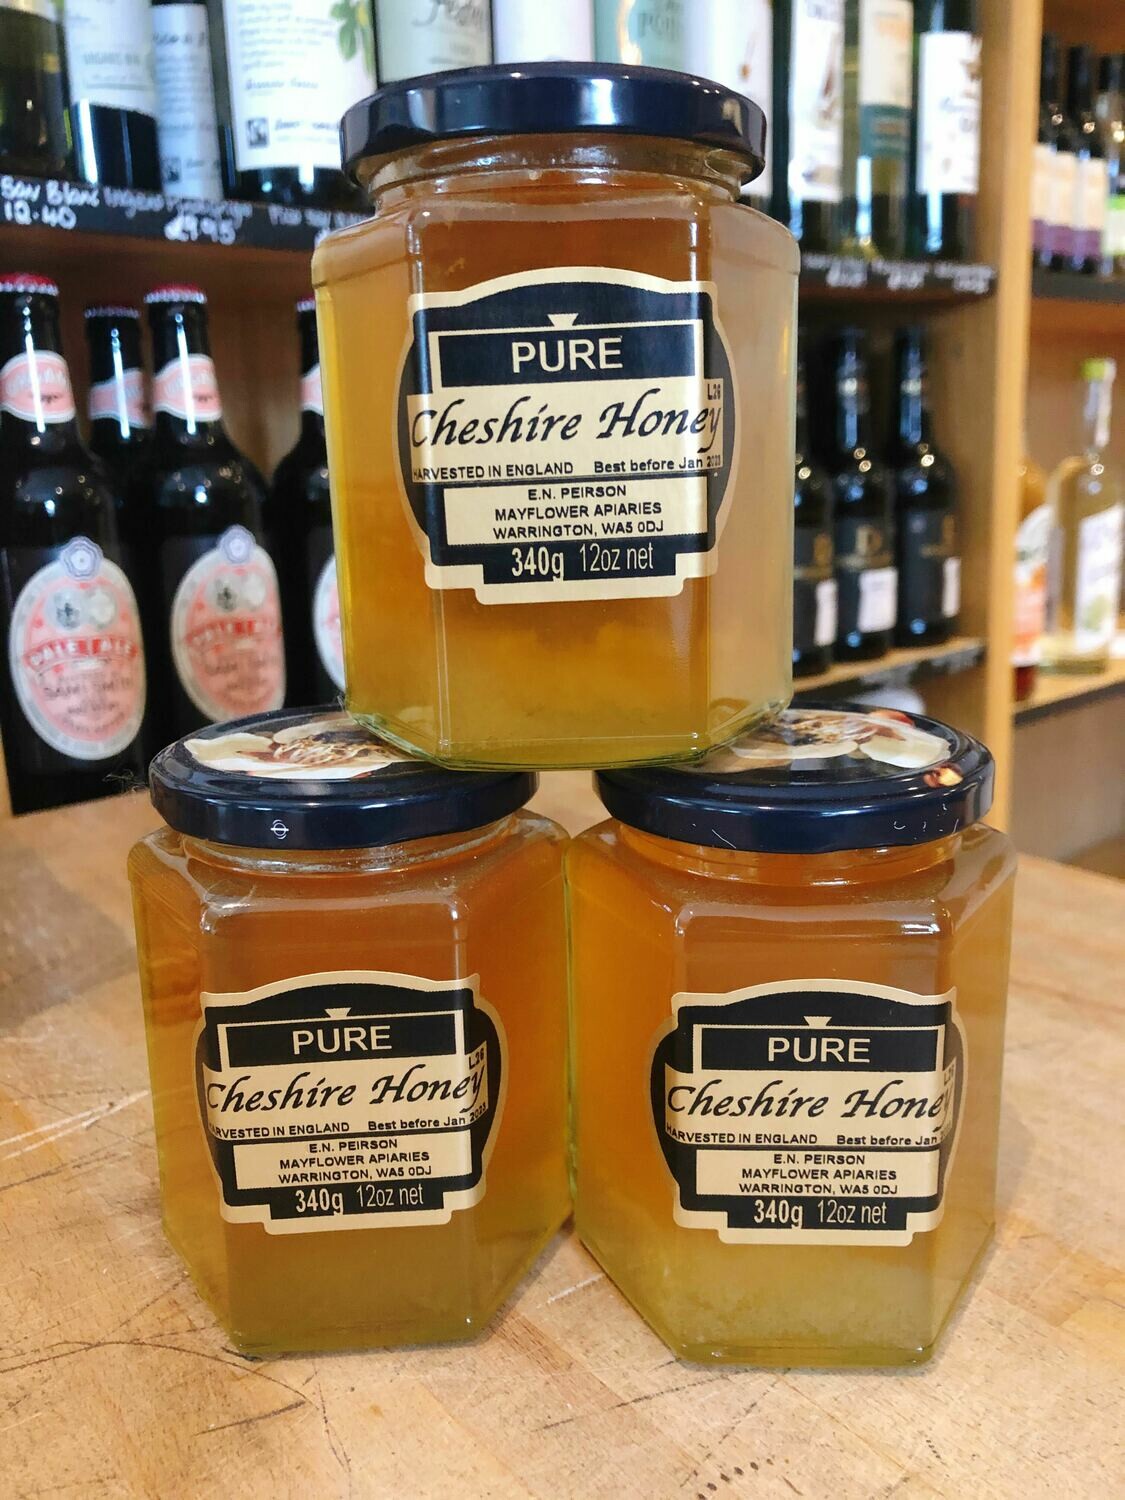 Local Cheshire Honey